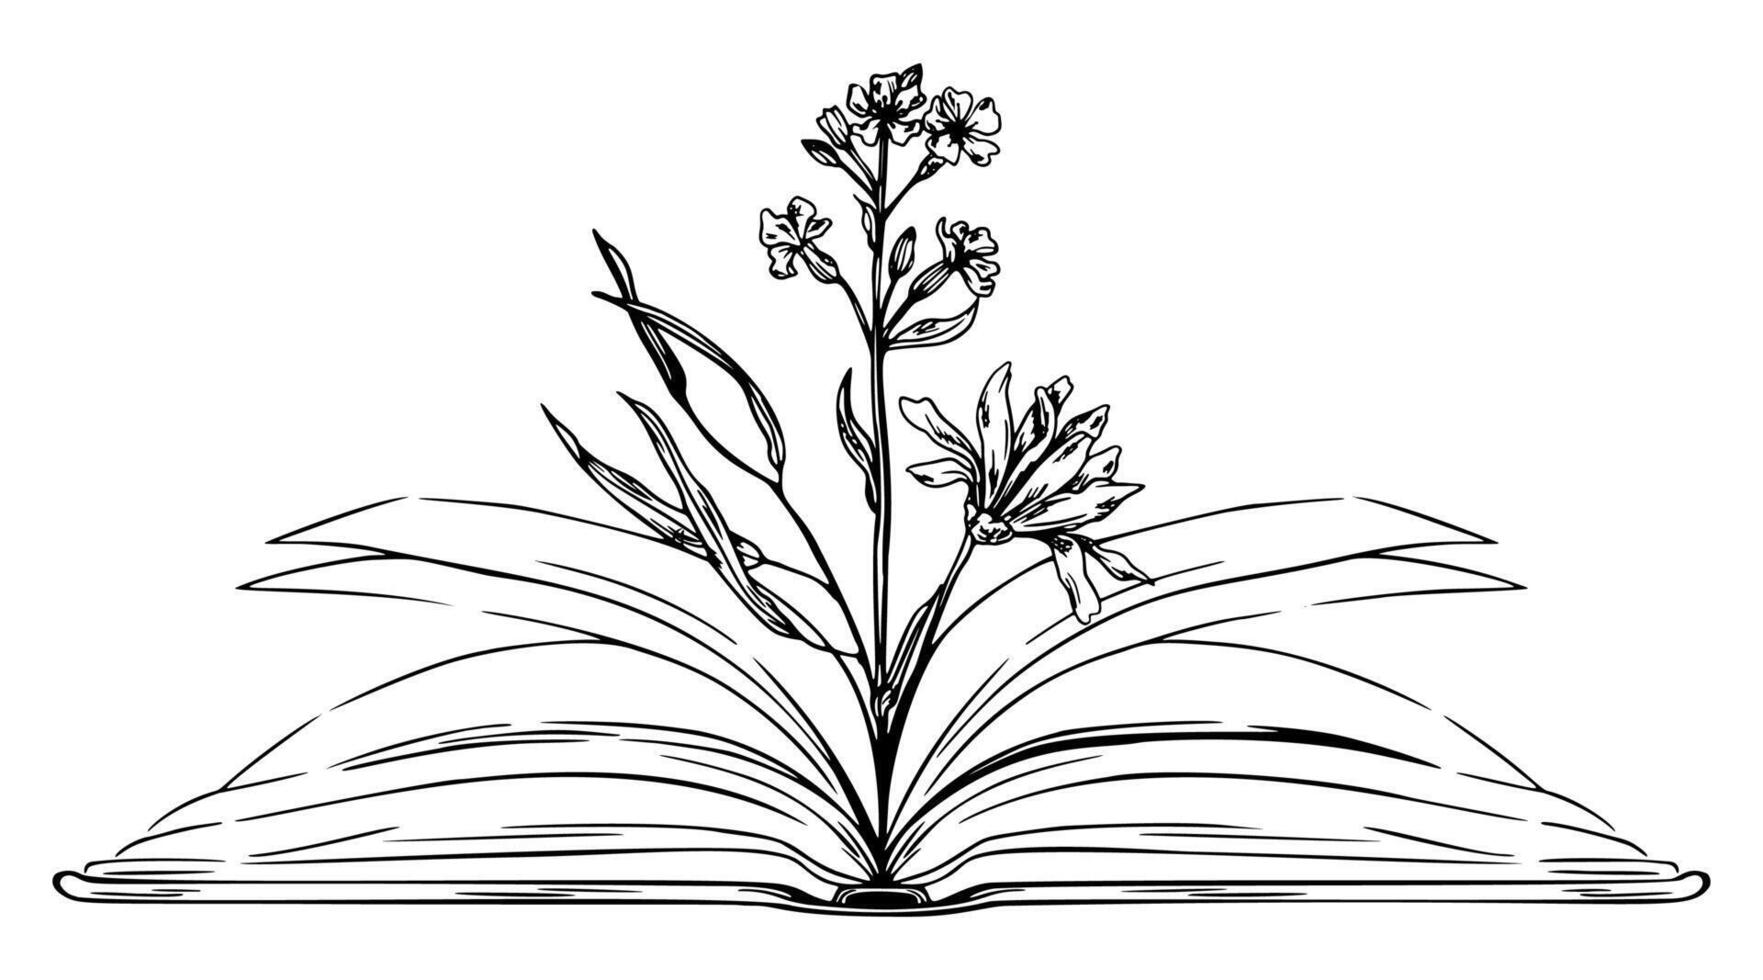 aberto livro com flores dentro, mão desenhado esboço ilustração vetor